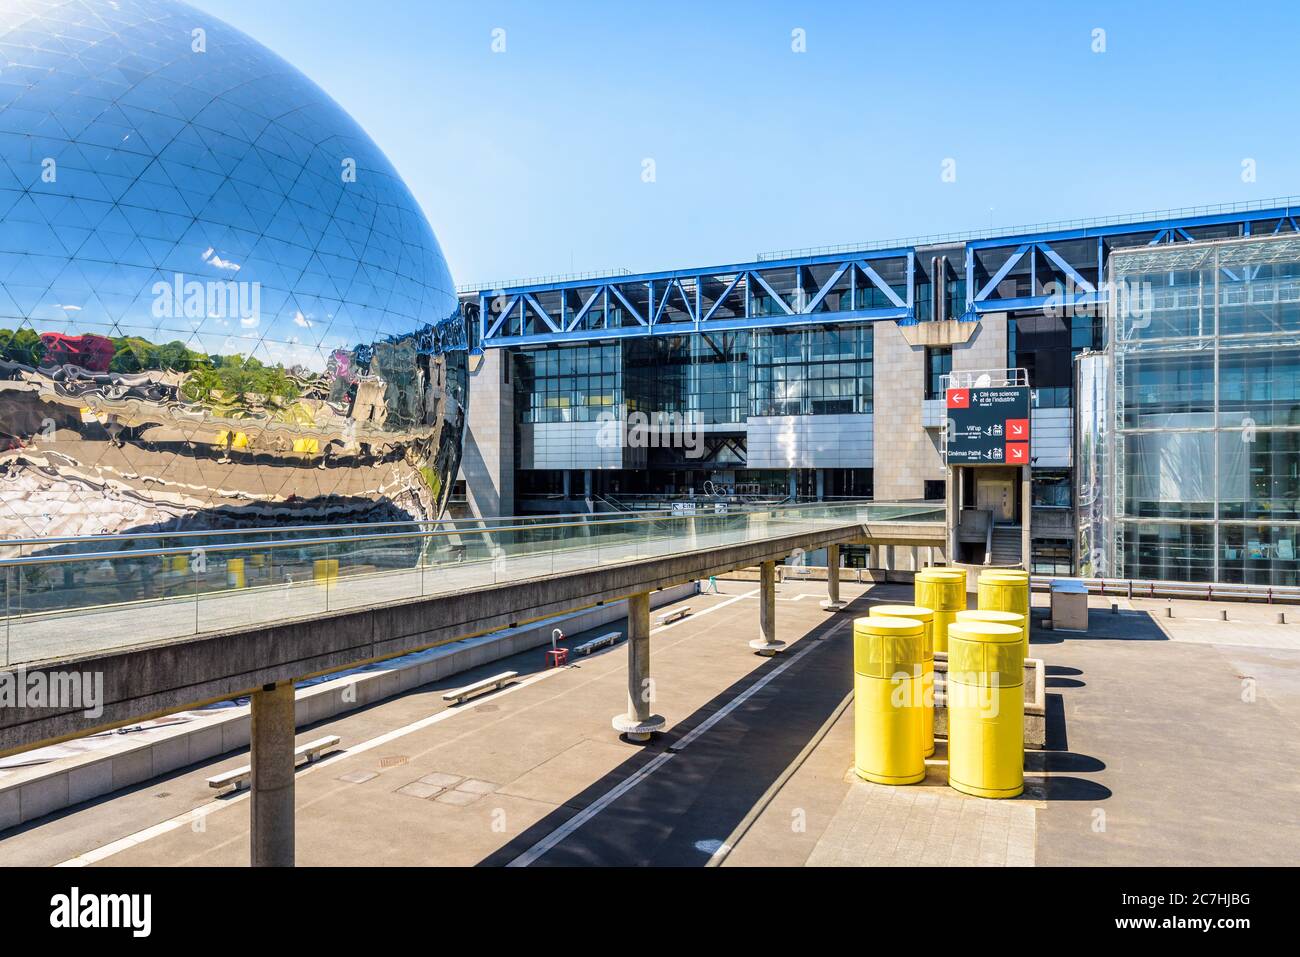 The Cite des Sciences et de l'Industrie, a science museum, and La Geode spheric theater located in the Parc de la Villette in Paris, France. Stock Photo